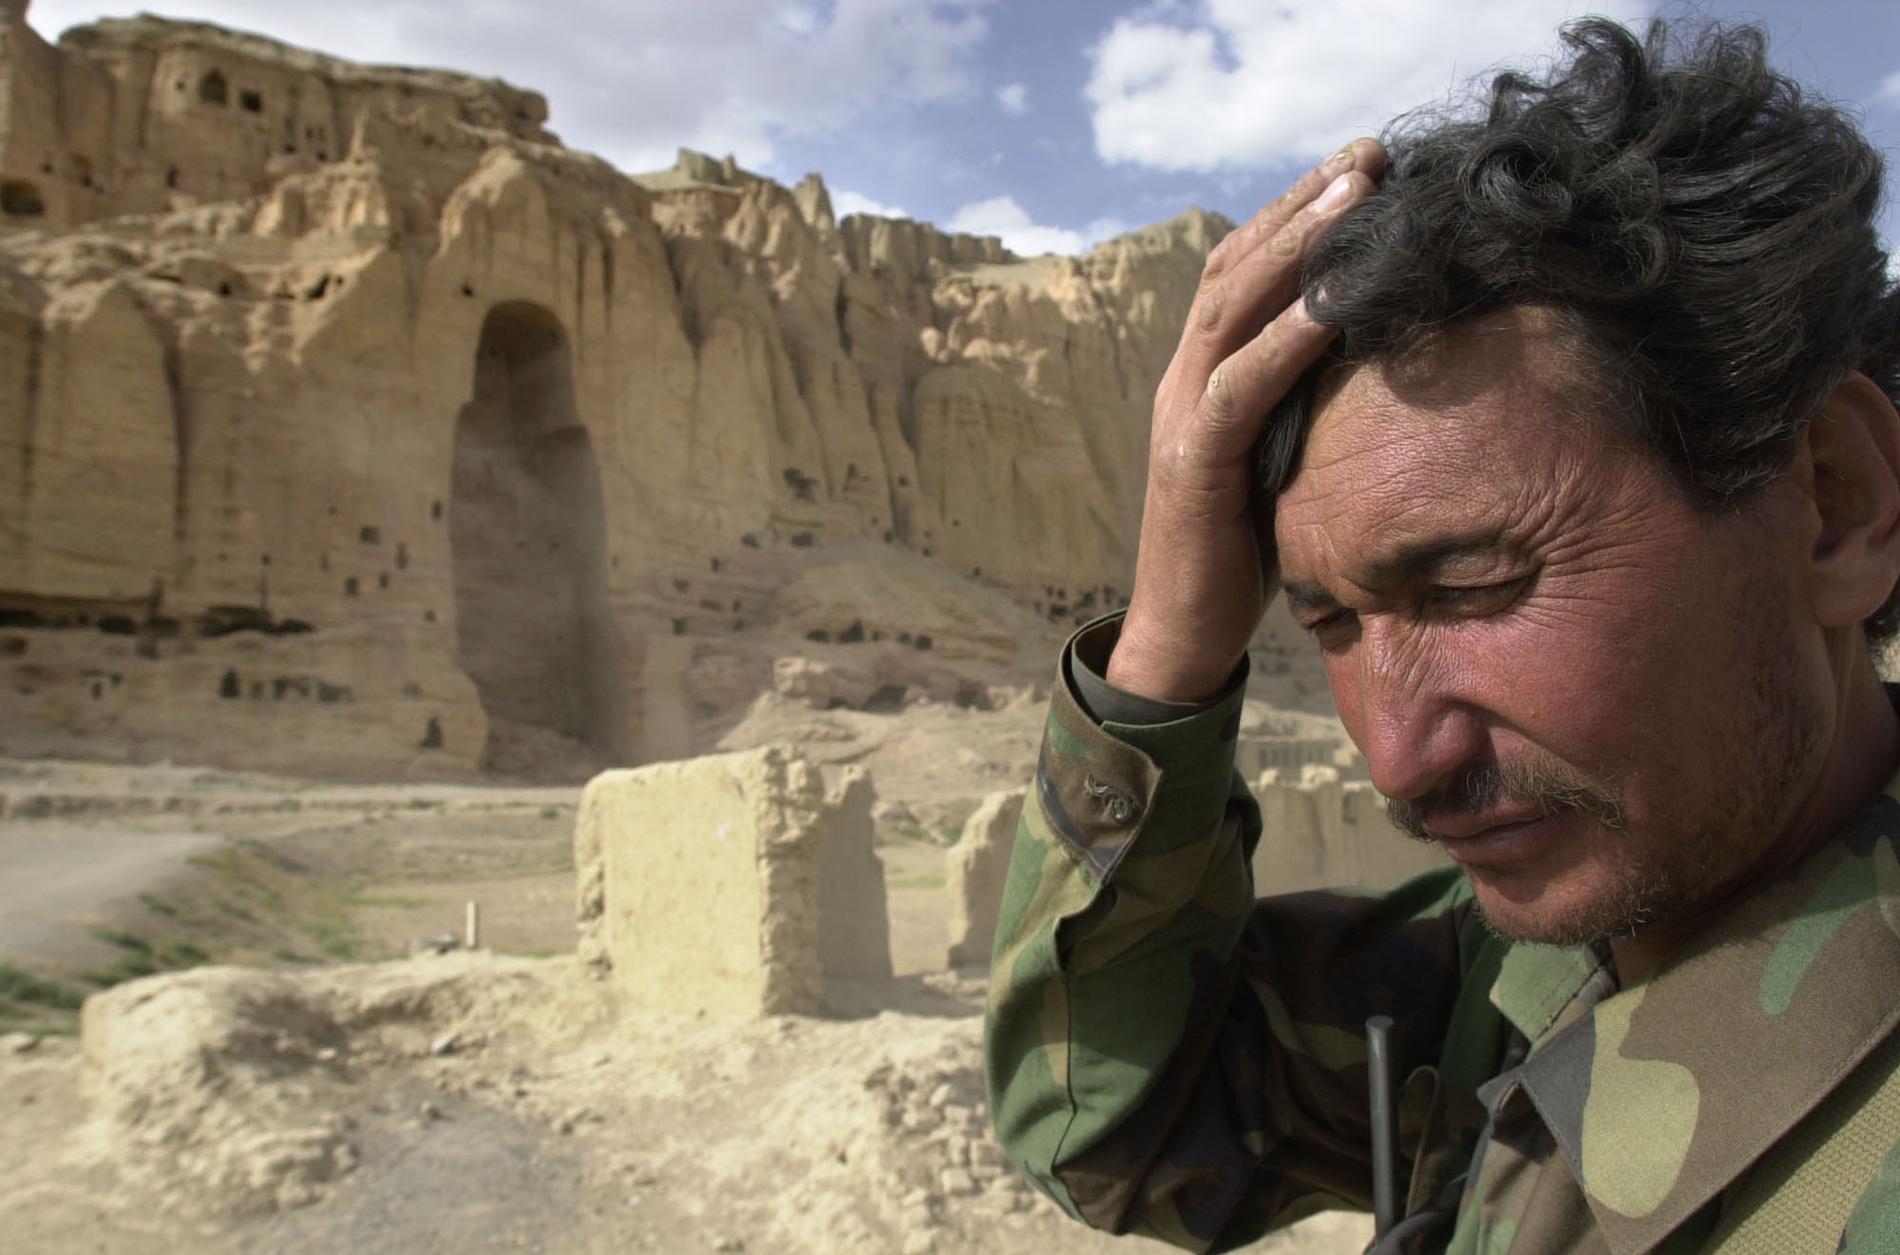 Sadat, som kämpat mot talibanerna, tar sig för huvudet när han ser de tomma bergsfickor där det tidigare stod jättelika och månghundraåriga buddhastatyer i Bamiyan. Bilden är från 2002.